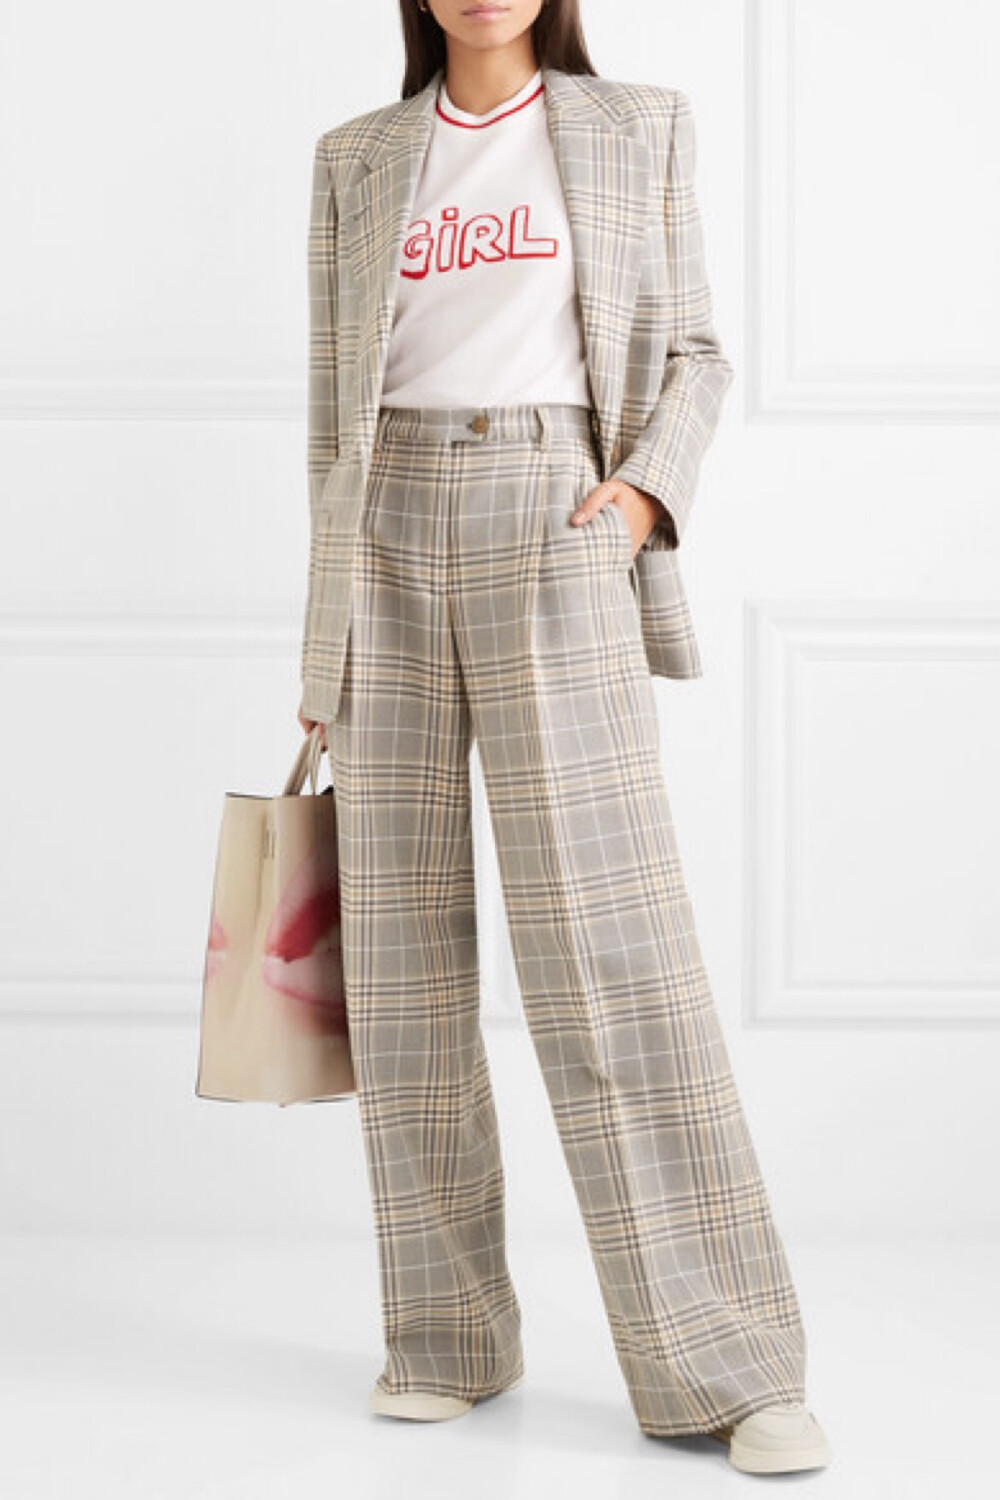 如果你把时尚达人 Kate Moss、Alexa Chung 和 Laura Bailey 当做造型标杆，那就不能错过英国设计师 Bella Freud 打造的这款毛衣。它出自品牌 2019 春夏系列，采用柔软的白色羊毛织就，衣身上的正红色 “Girl” 字样和圆领处的同色条纹巧妙呼应。